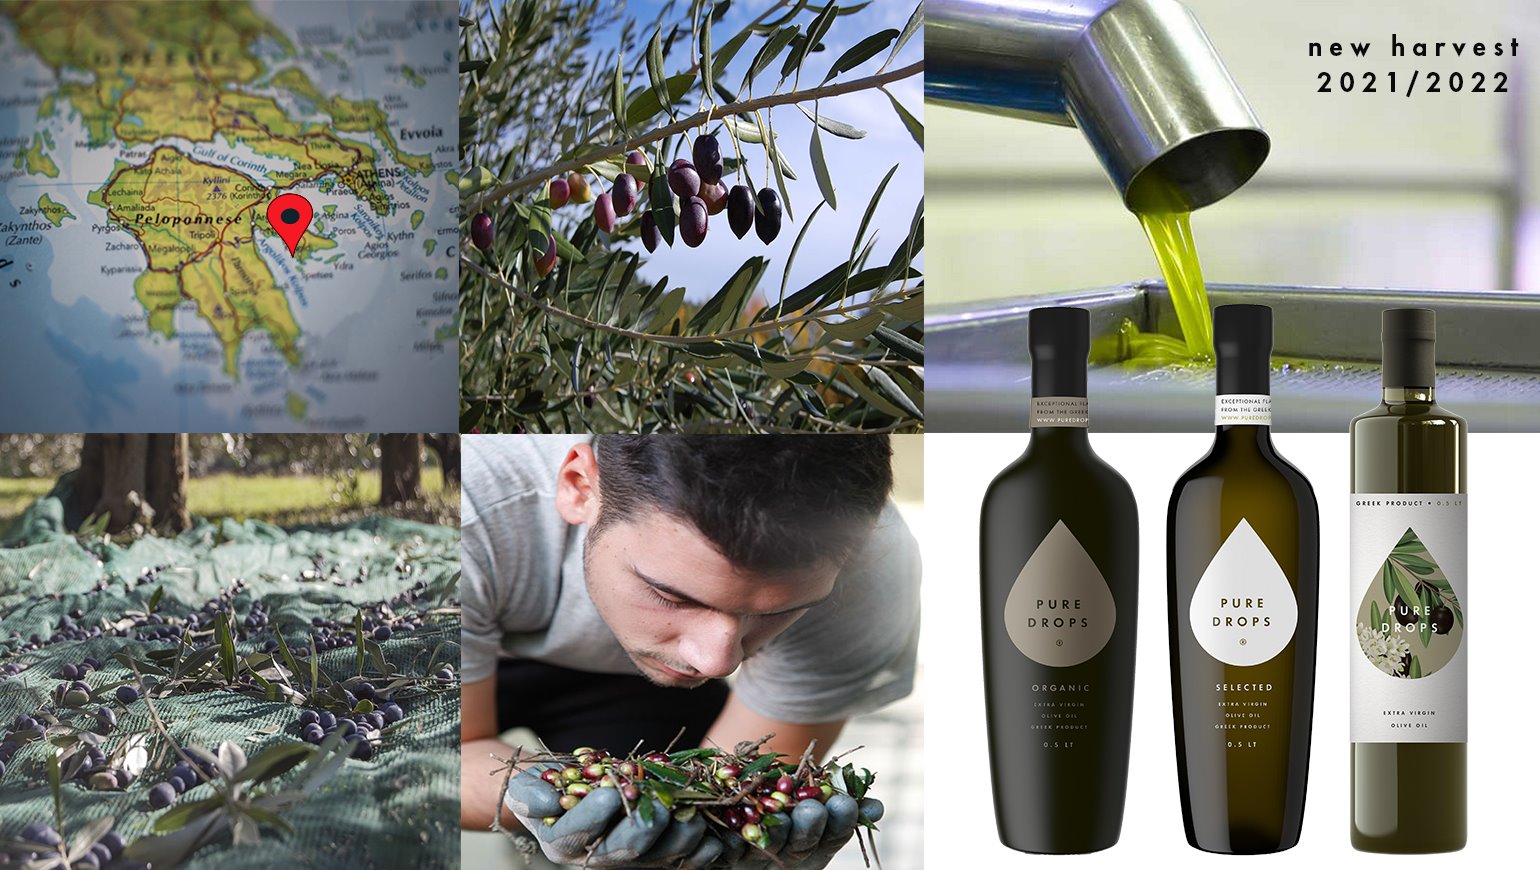 The new olive oil harvest 2021/2022 begins